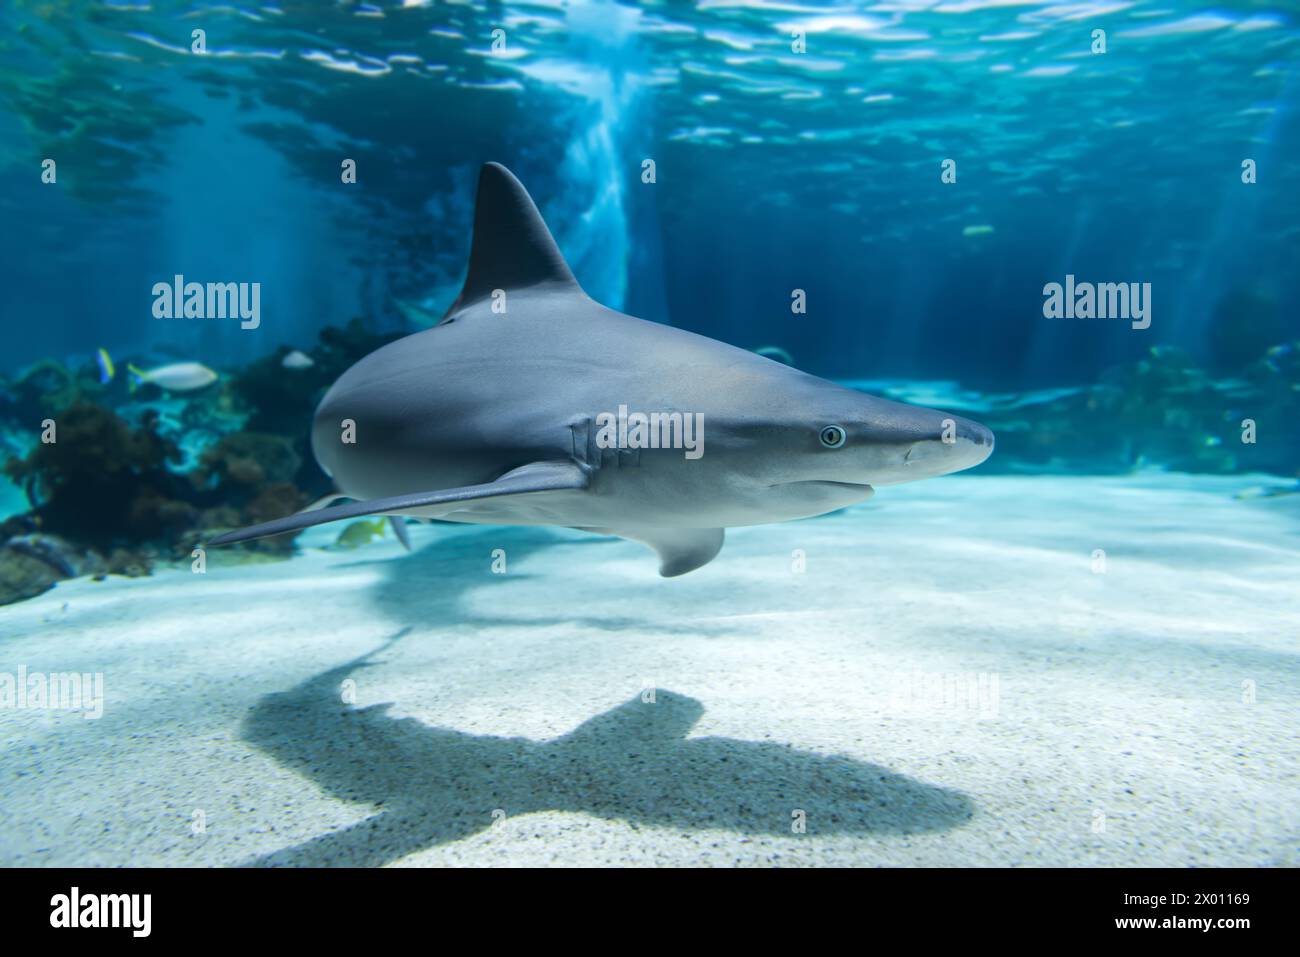 Ein Hai gleitet anmutig durch das klare blaue Wasser des Ozeans und wirft einen markanten Schatten auf den Sandboden darunter. Die Silhouette des Hais Contra Stockfoto